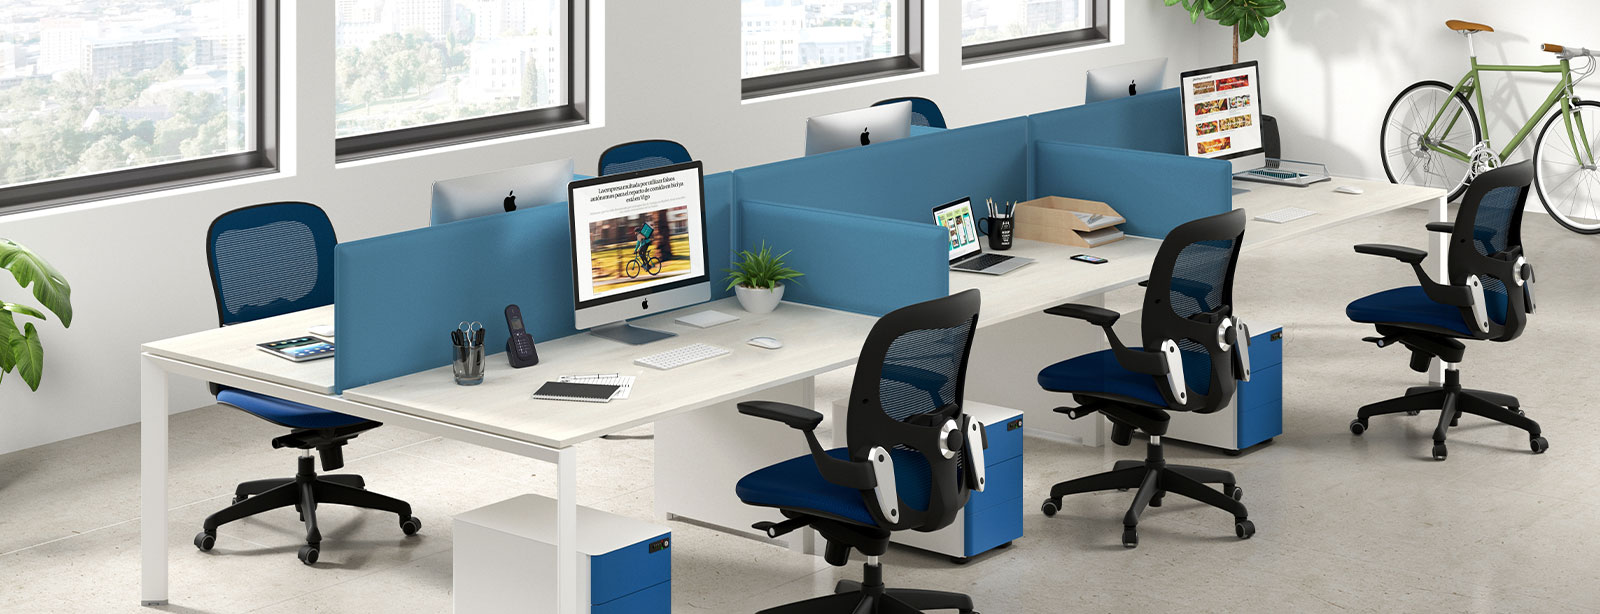 Cuánto espacio debe haber en la oficina por persona? - Blog SillaOficina365.